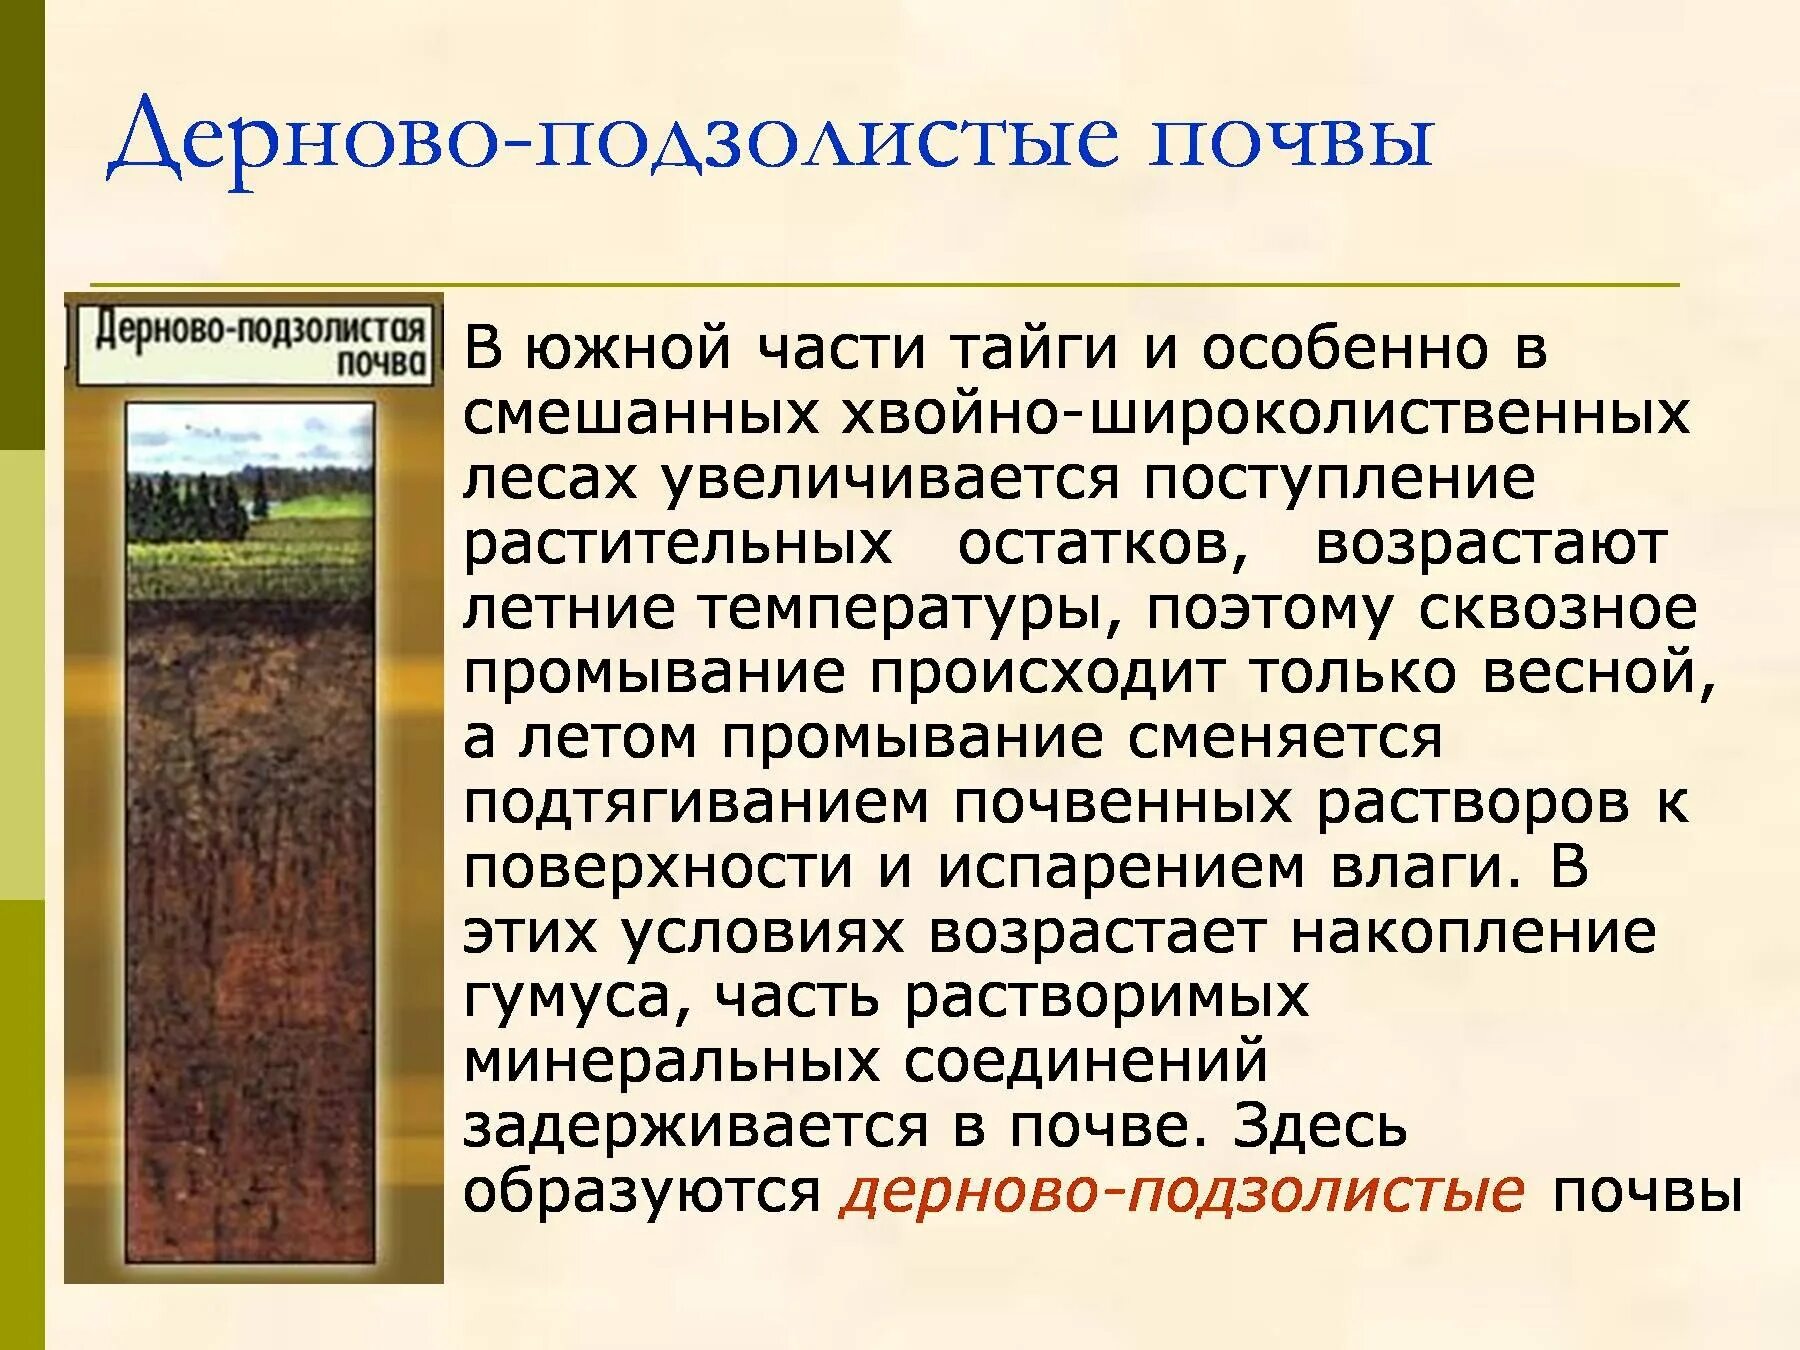 Типы почв характерны для смешанных лесов. Дерново-подзолистые почвы тайги. Дерново-подзолистые почвы зоны России. Дерново подзолистые гумус. Дерново-подзолистые почвы климат.